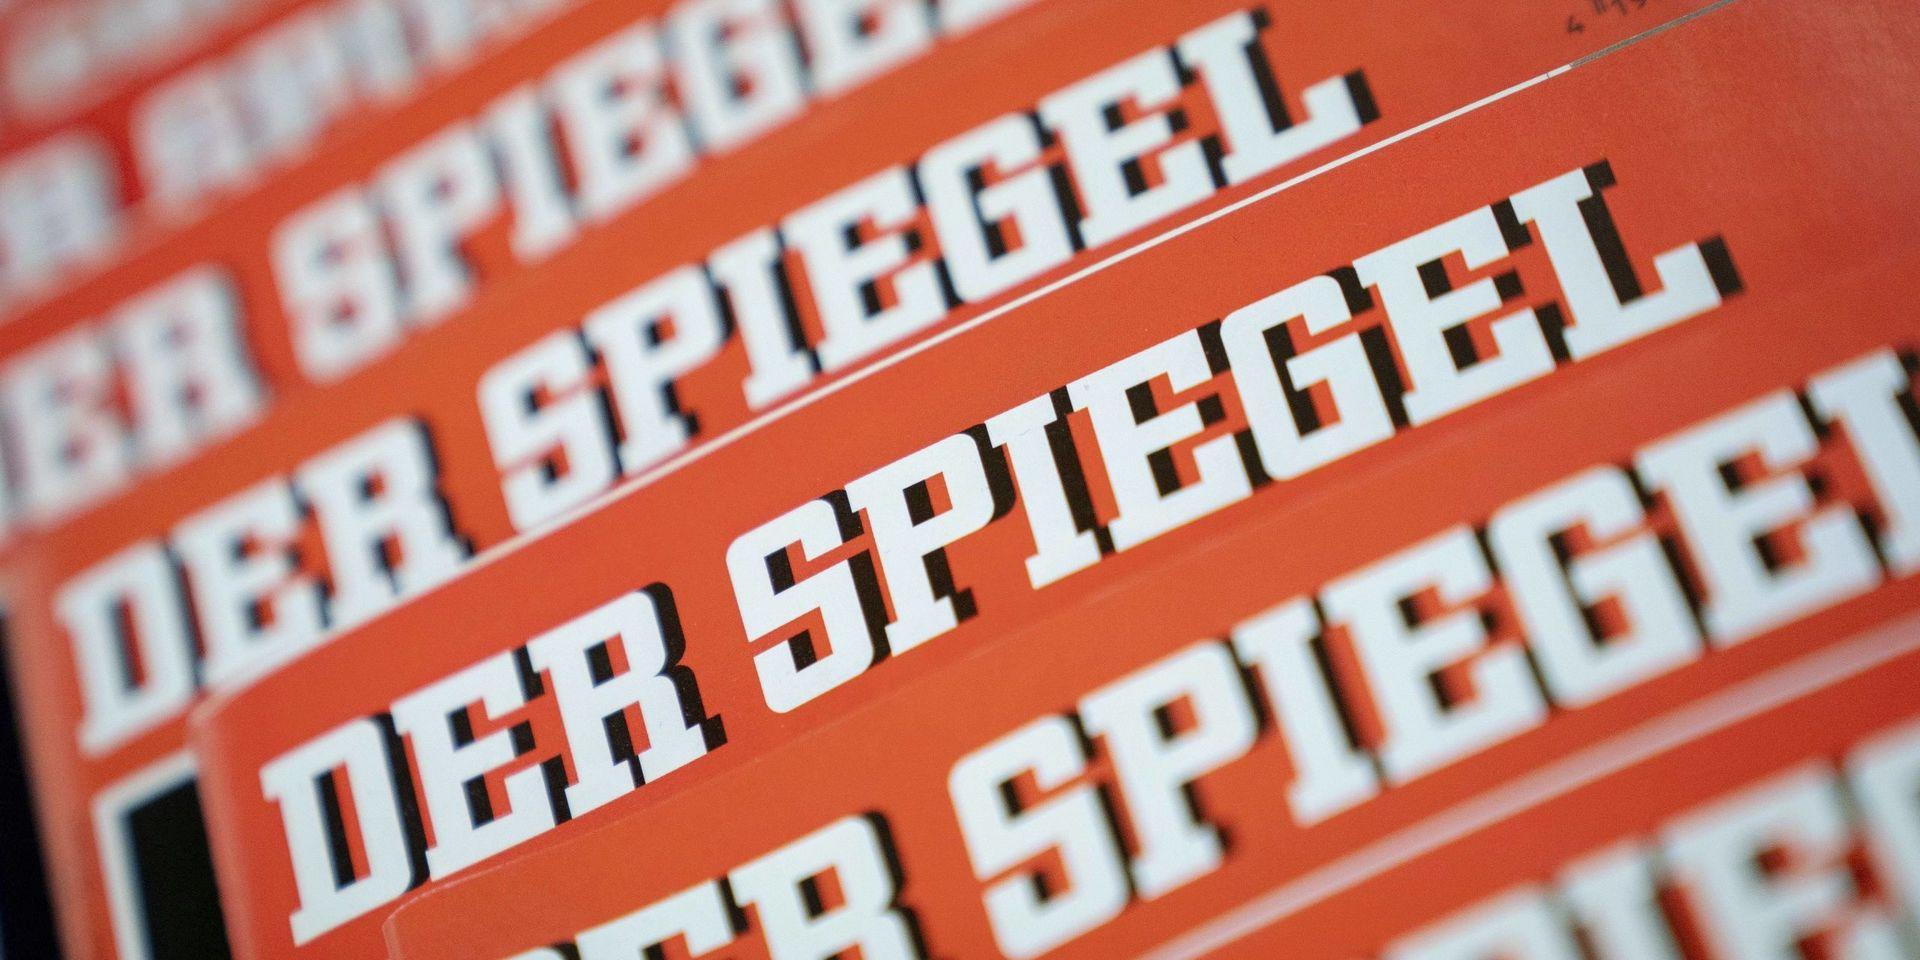 Der Spiegel är ett viktigt, tyskt nyhetsmagasin som utkommer varje vecka. Avslöjandet att en av deras stjärnreportrar, Claas Relotius, förfalskat innehållet i många av hans reportage har skakat om Tyskland.